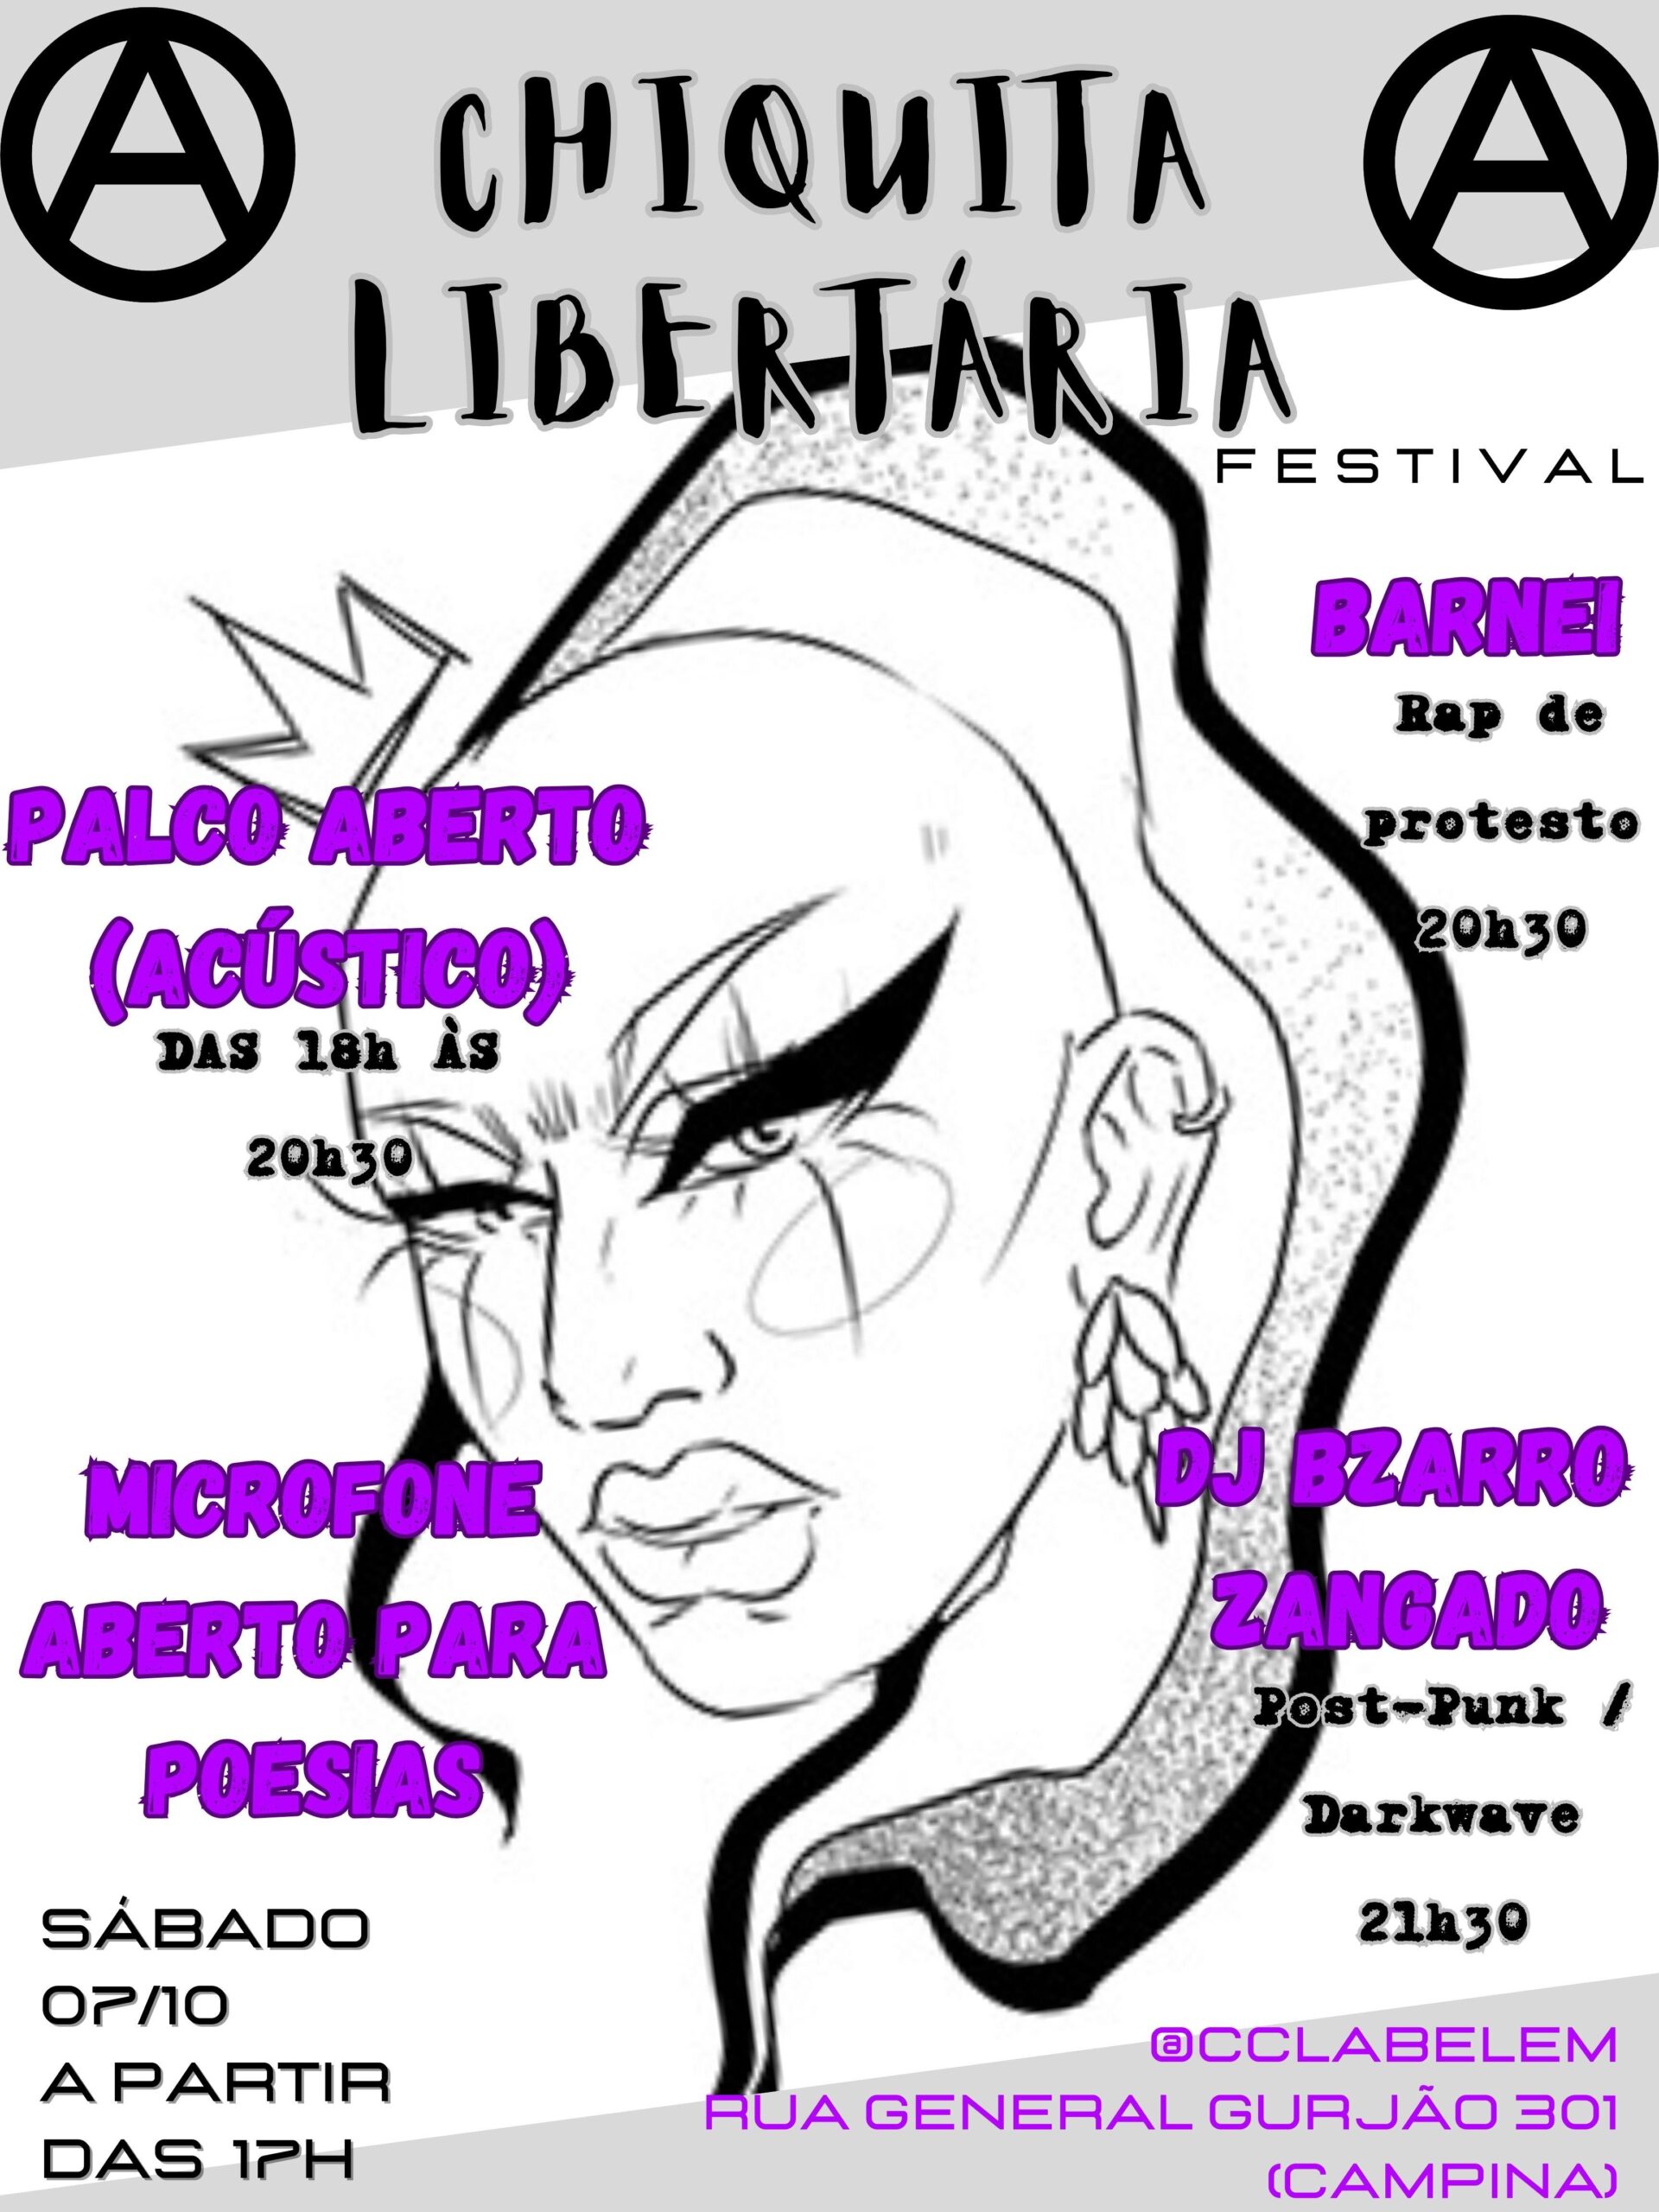 Festa da Chiquita Libertária: como vai ser? O que vai ter?